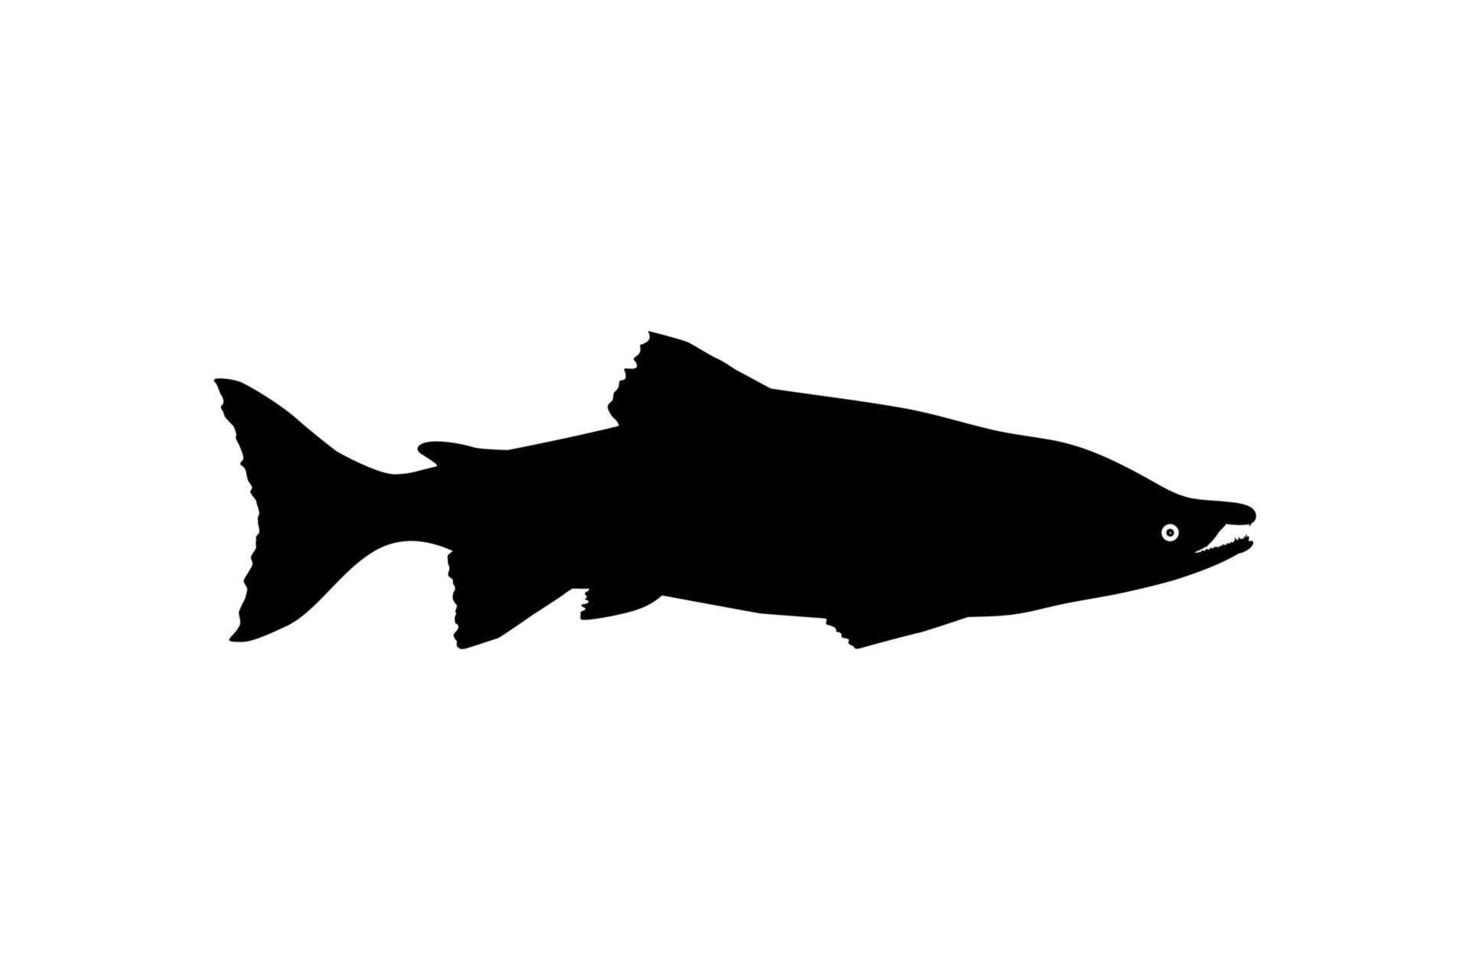 silueta de salmón para icono, símbolo, logotipo, pictograma, aplicaciones, sitio web o elemento de diseño gráfico. ilustración vectorial vector